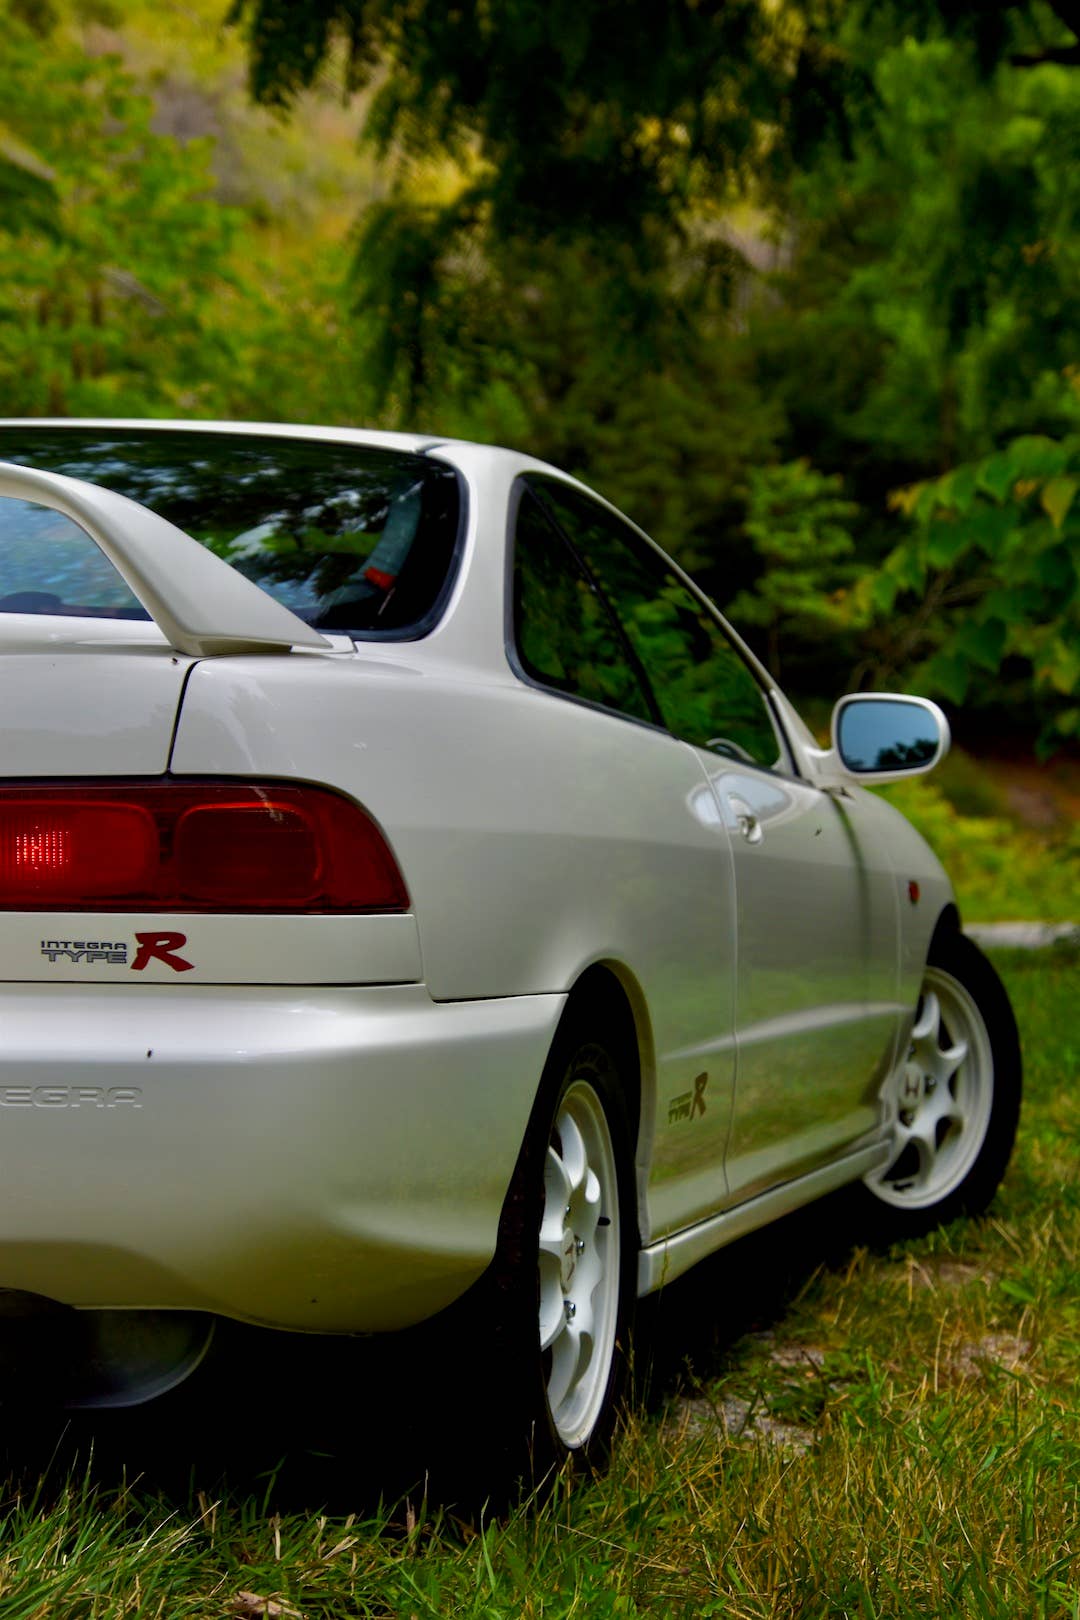 1996 Boční profil Honda Integra Type R s travnatým podkladem